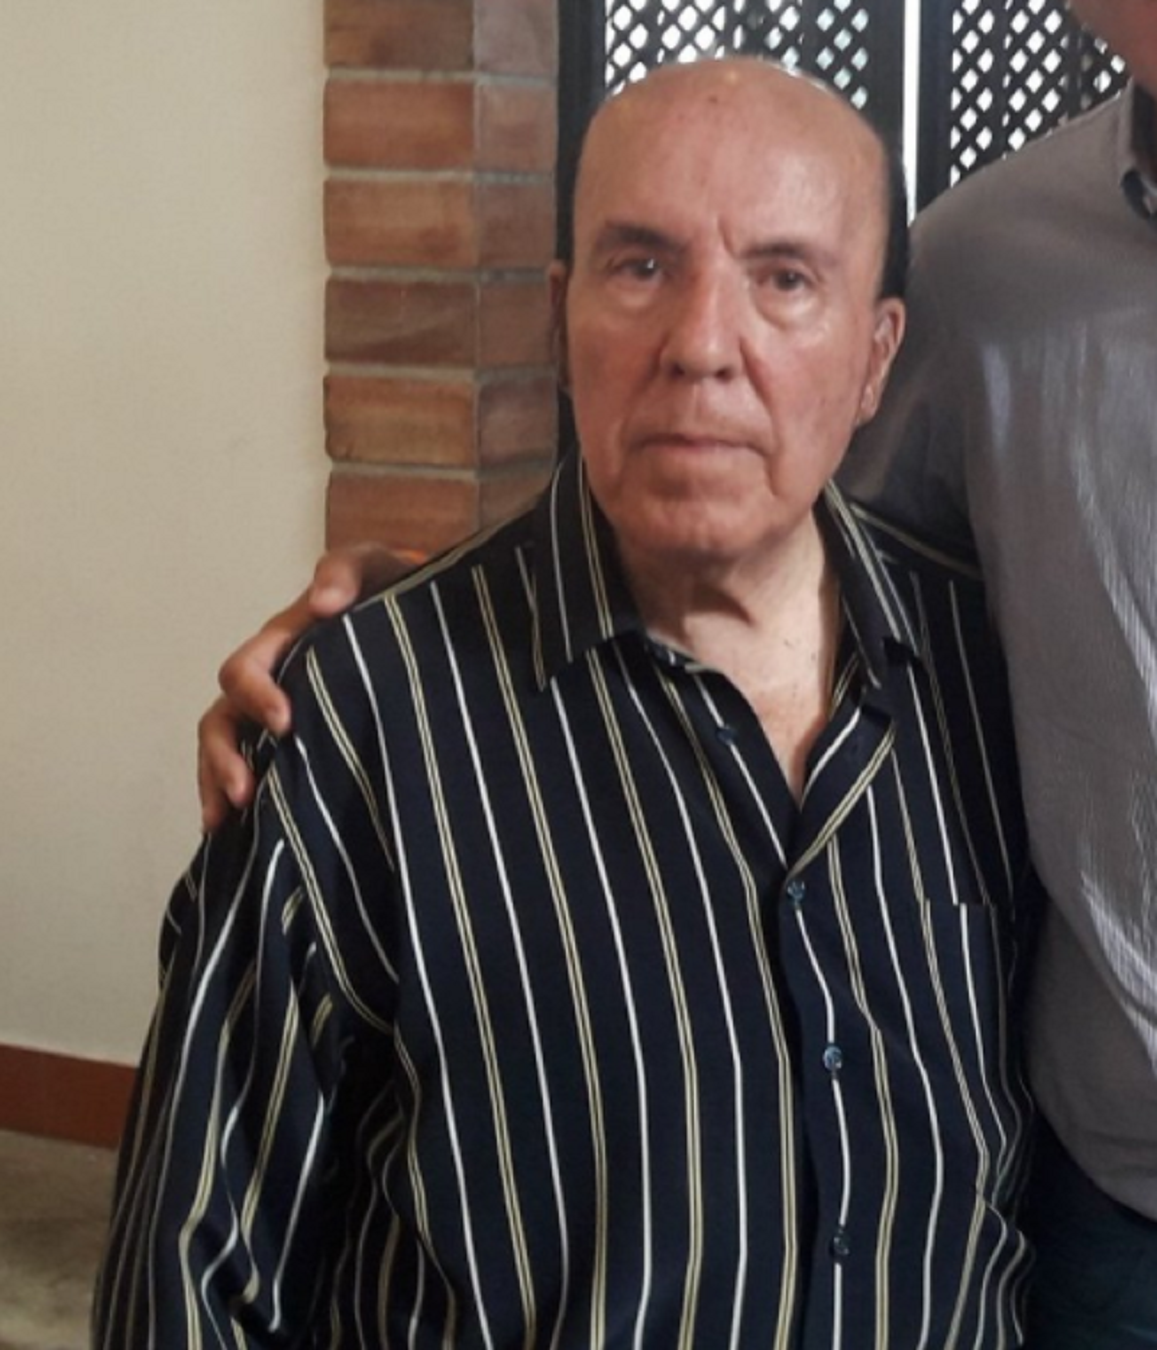 Chiquito de la Calzada, hospitalitzat als 85 anys en no poder-se aixecar de terra